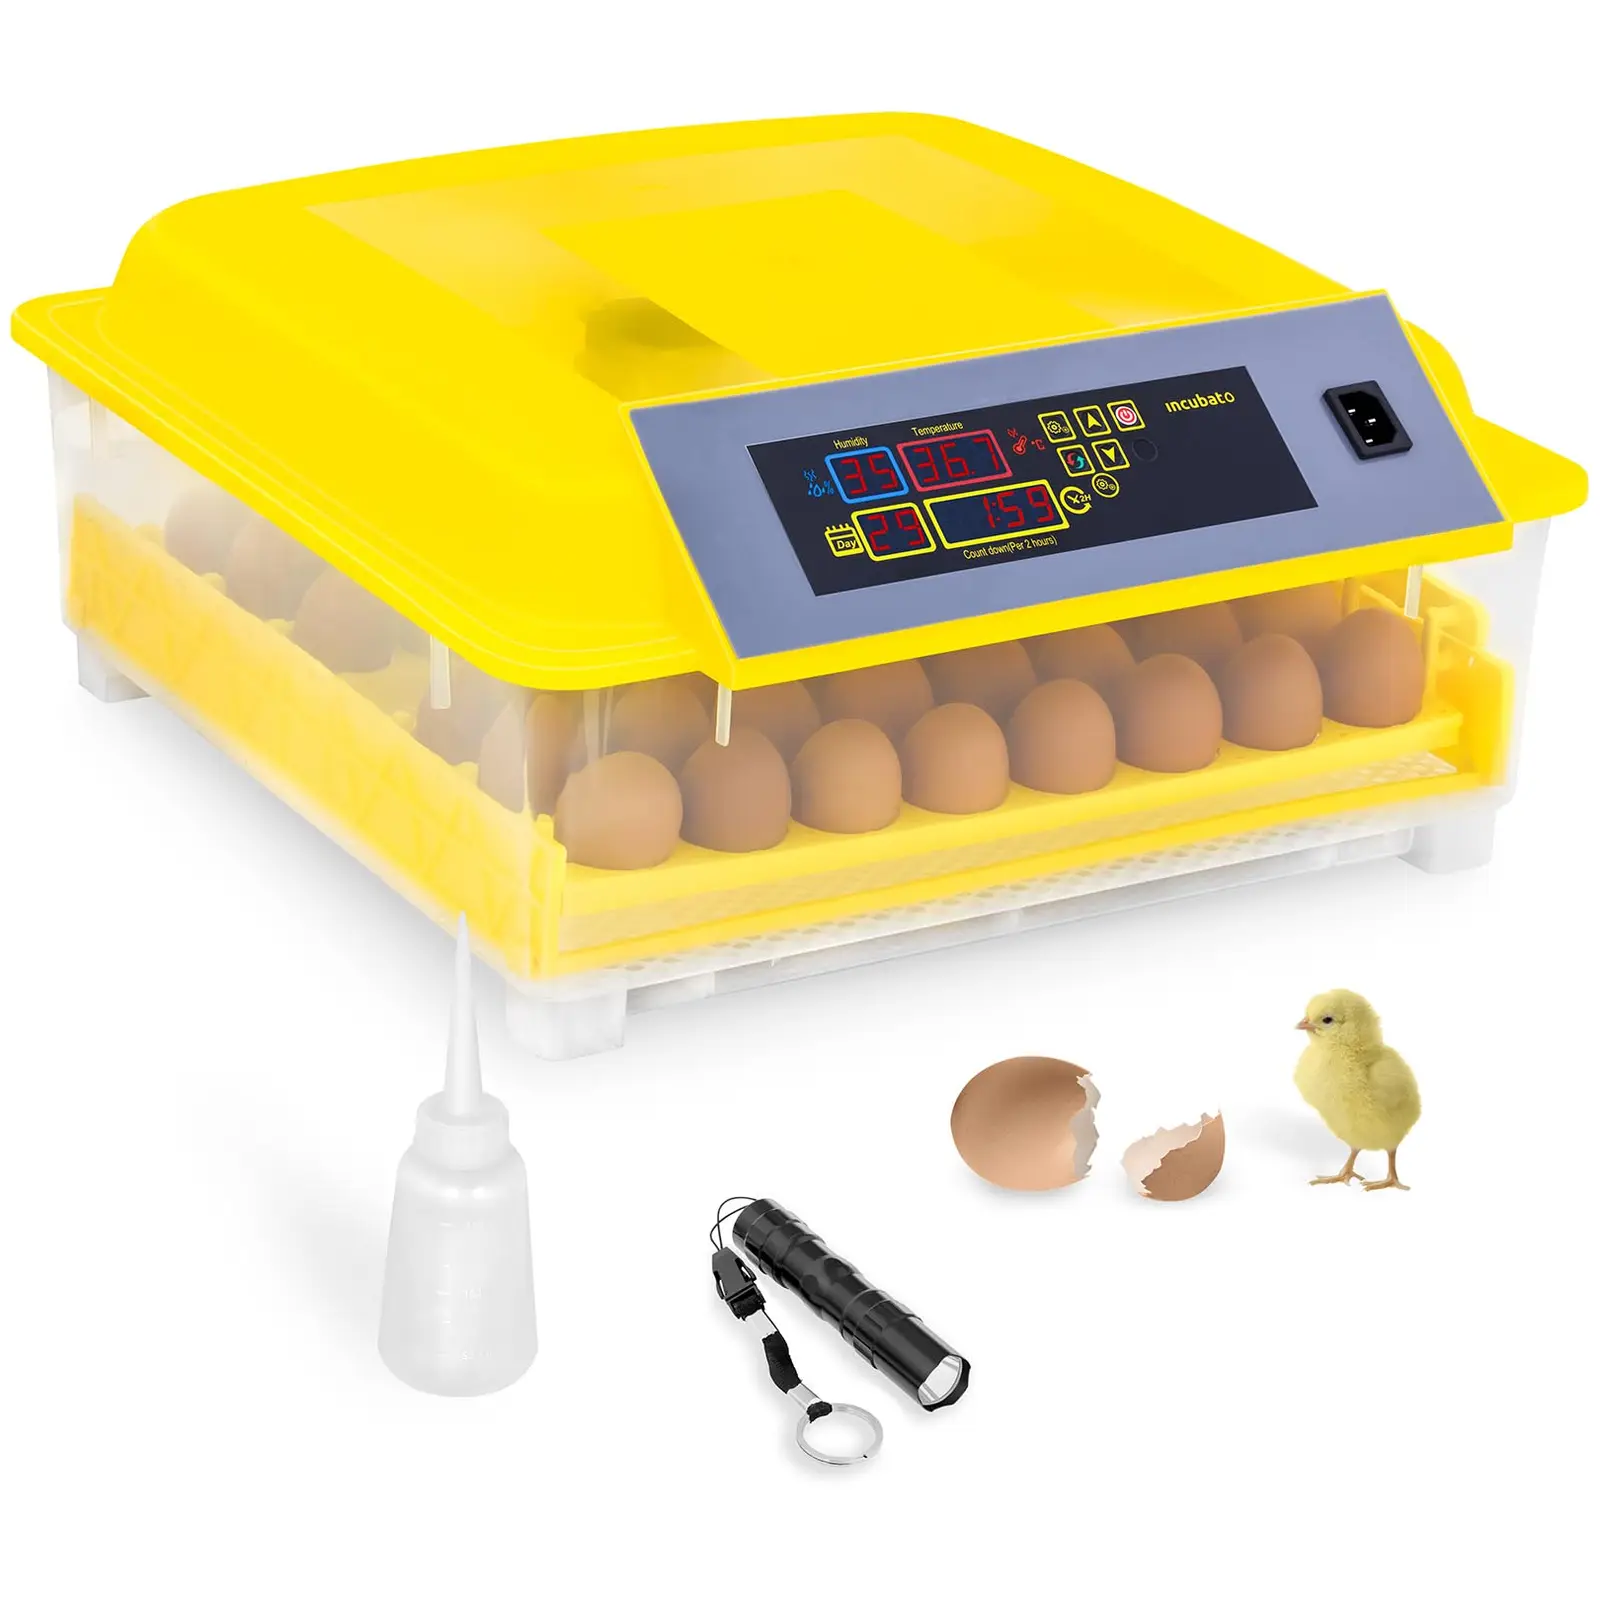 Brutapparat - 48 Eier - inklusive Schierlampe und Wasserspender - vollautomatisch